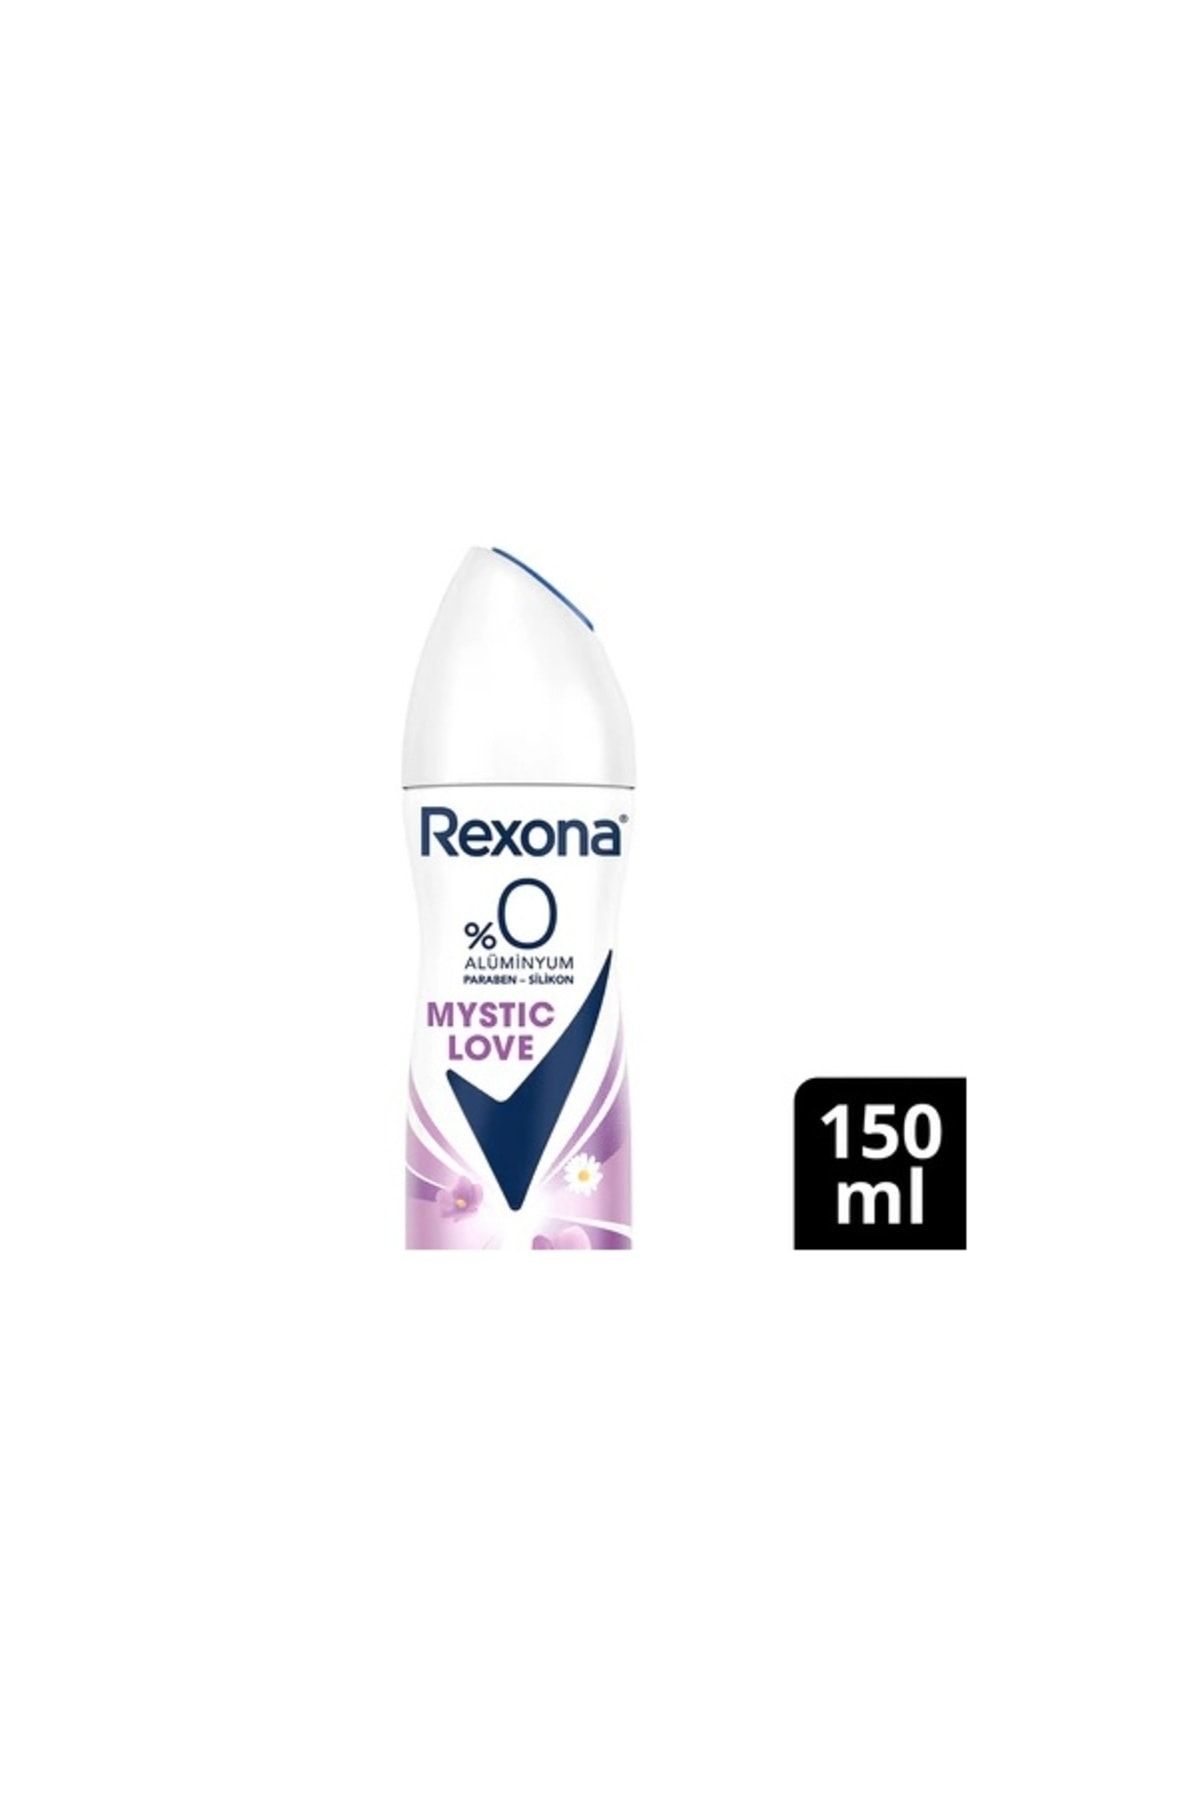 Rexona Kadın Sprey Deodorant Mystic Love %0 Alüminyum 48 Saat 150 ml